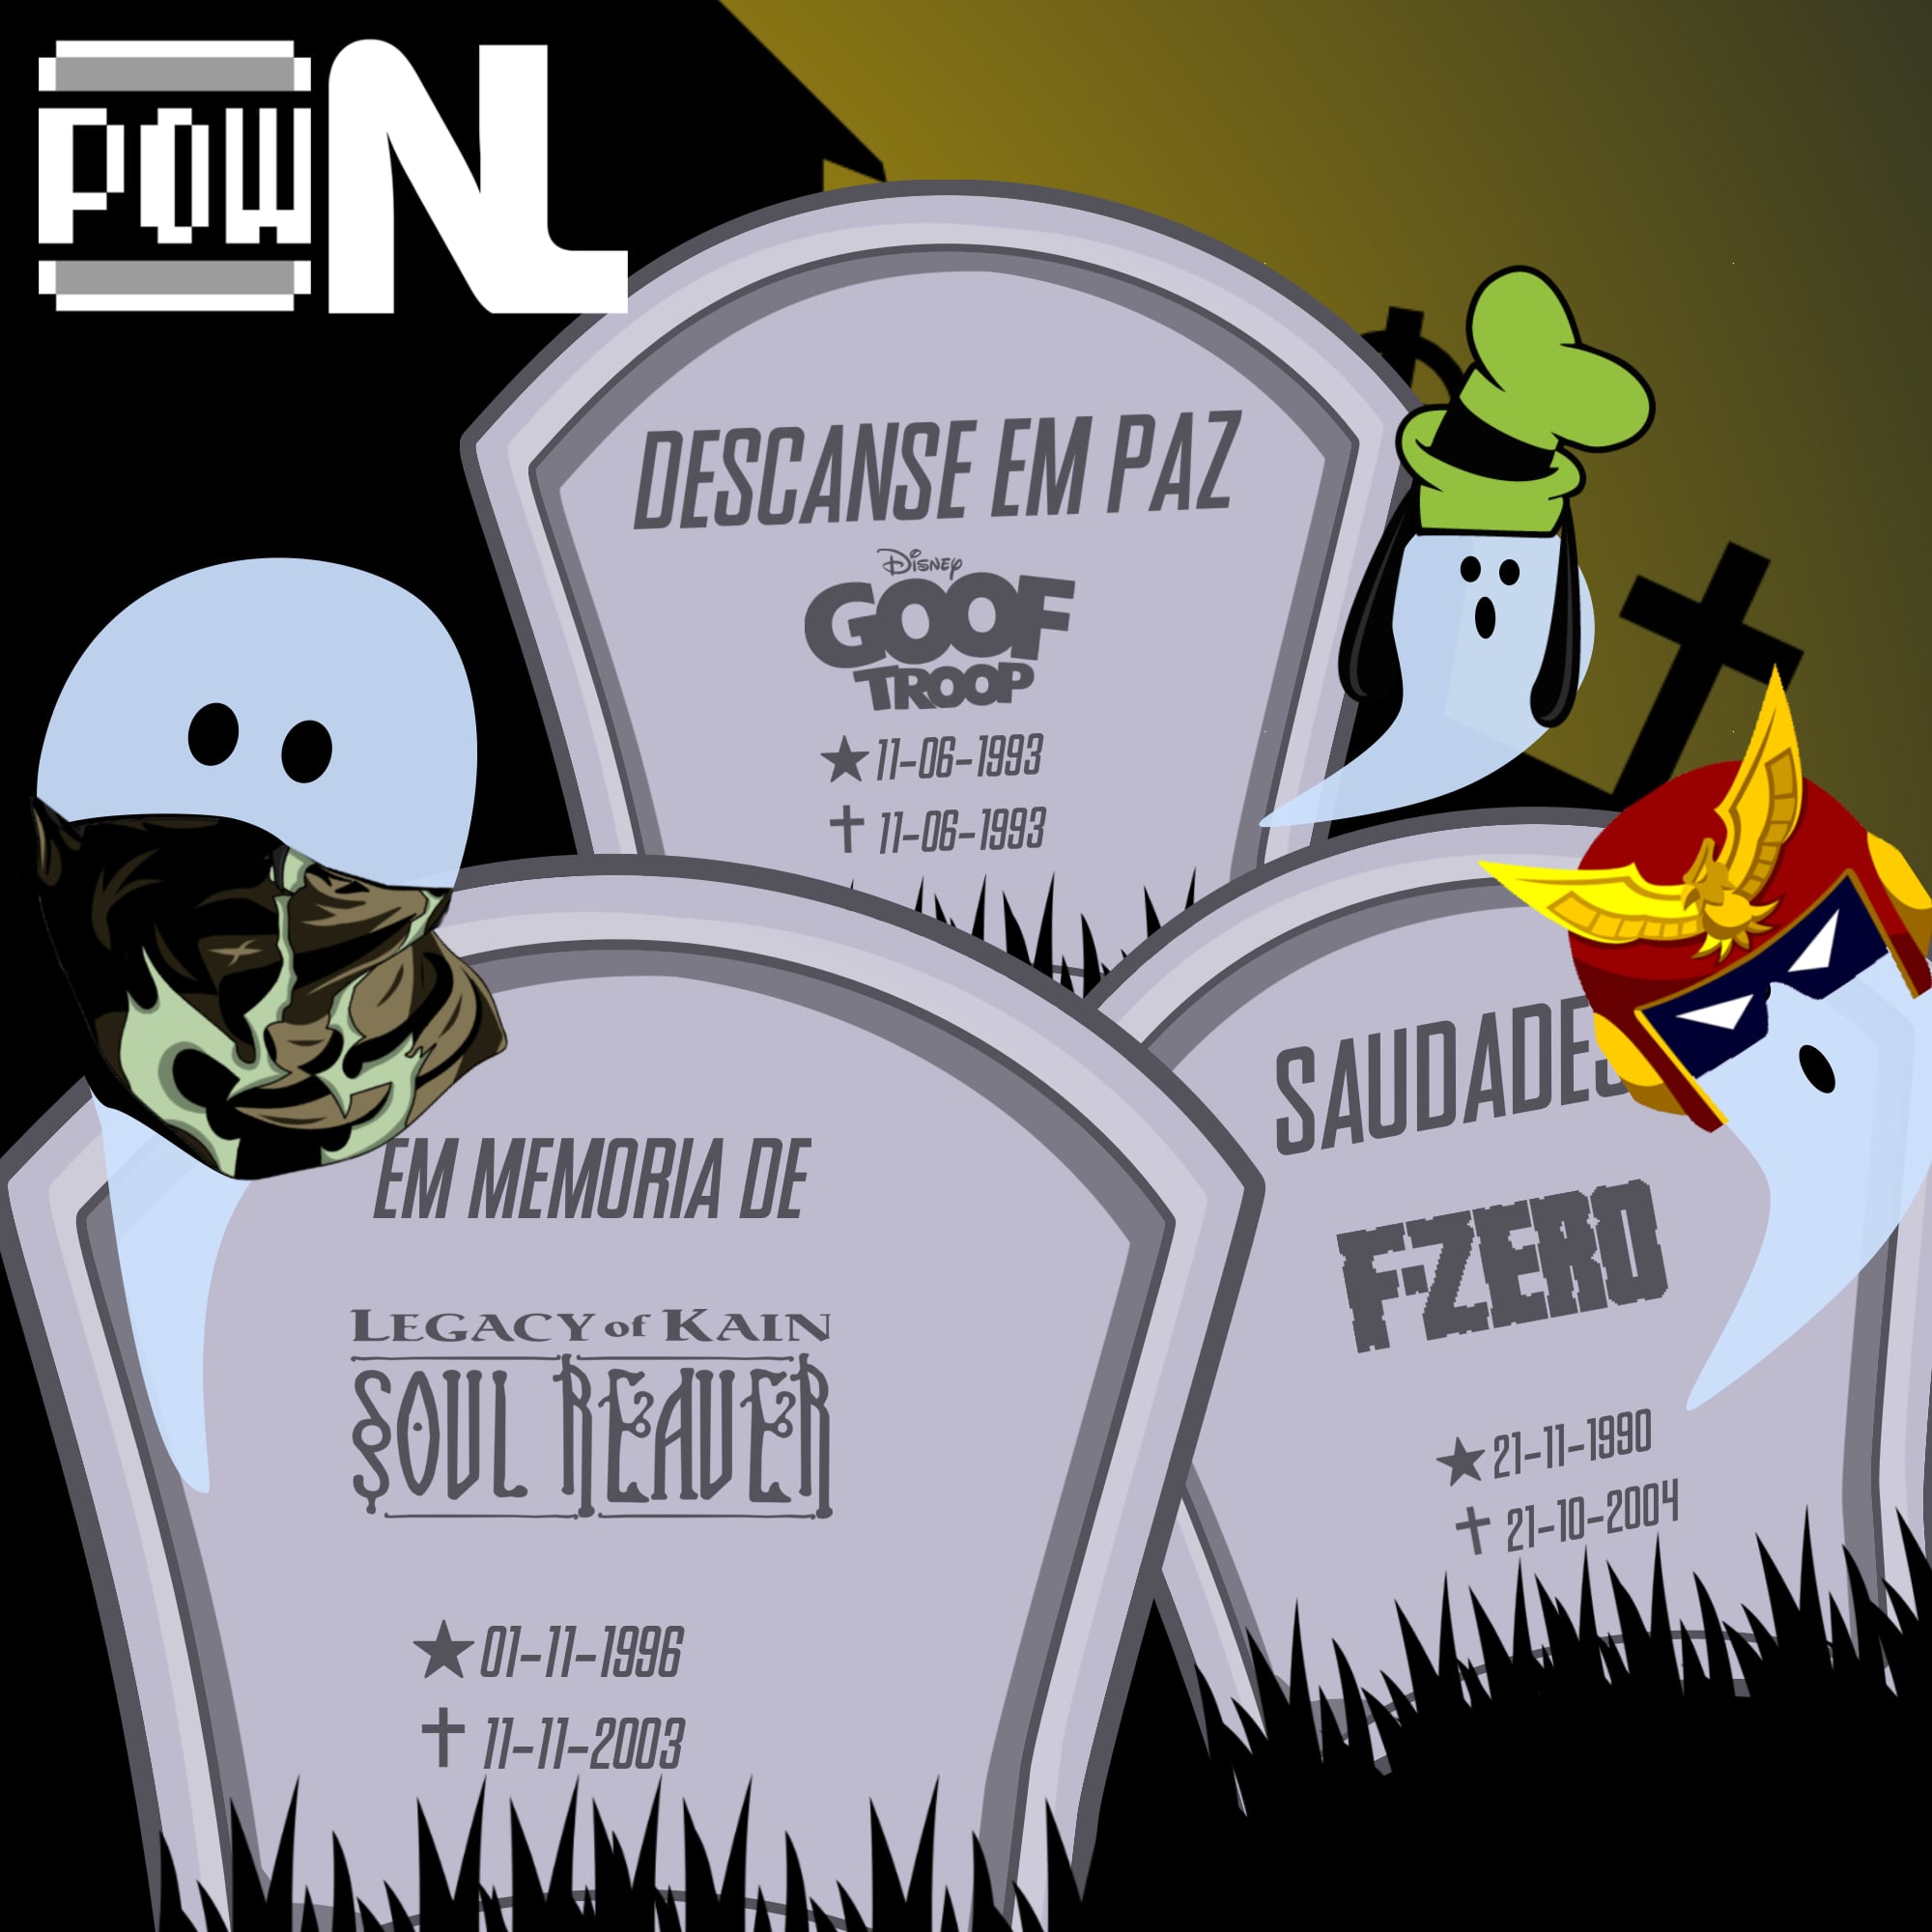 Nintendo POWdcast #182 – Ressuscitando Franquias: F-Zero, Goof Troop e Legacy of Kain: Soul Reaver